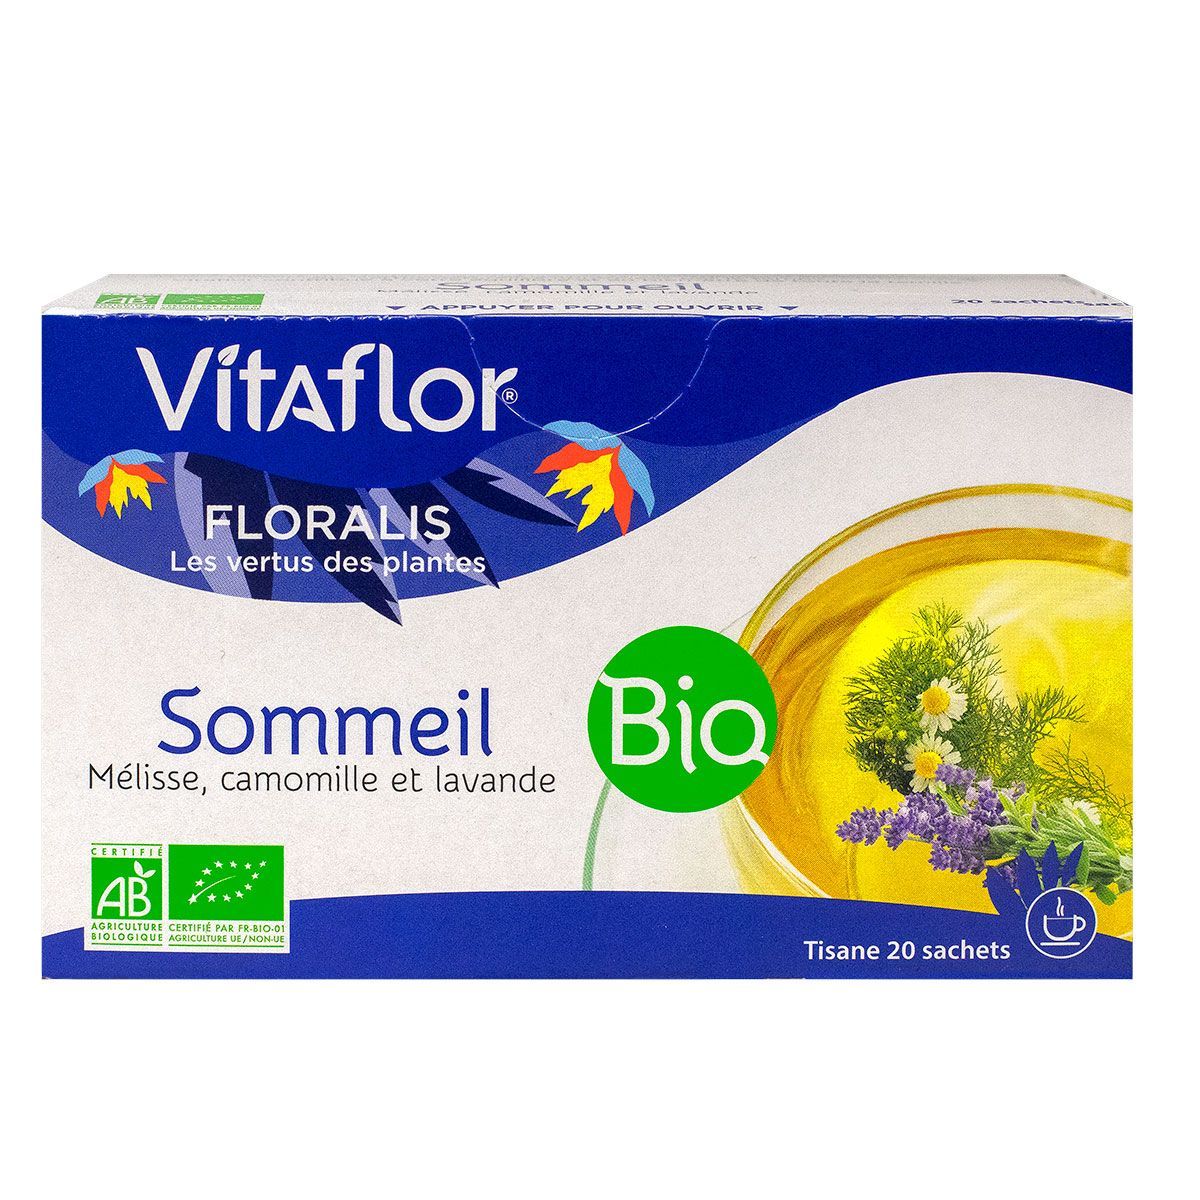 La tisane sommeil Bio Vitaflor est votre alliée bien-être